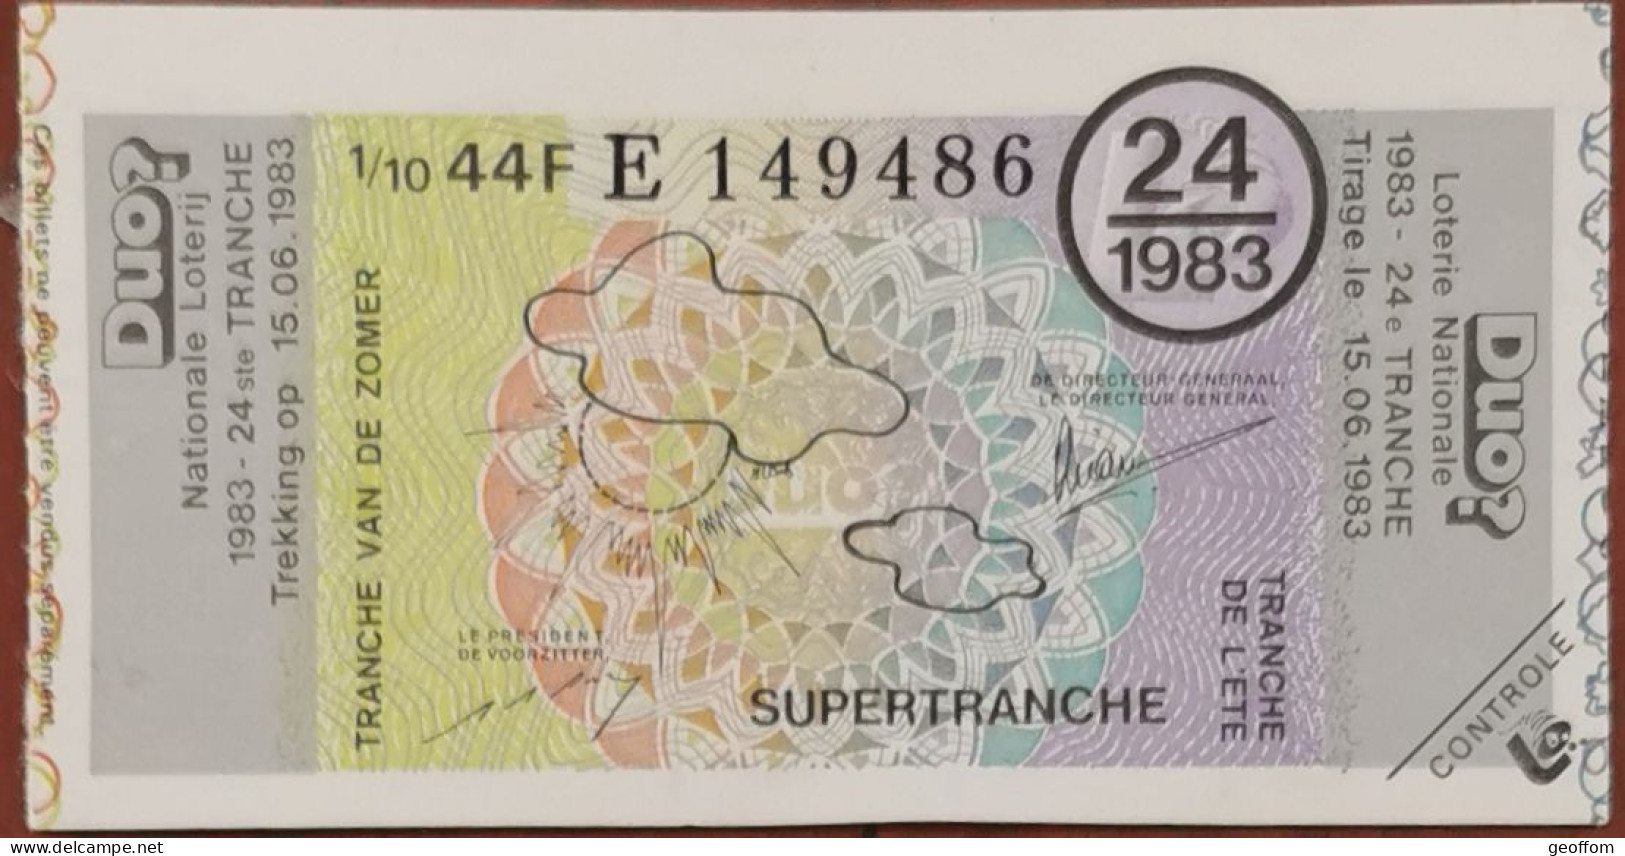 Billet De Loterie Nationale 1983 24e Tr SuperTranche De L'été - 15-6-1983 - Billetes De Lotería